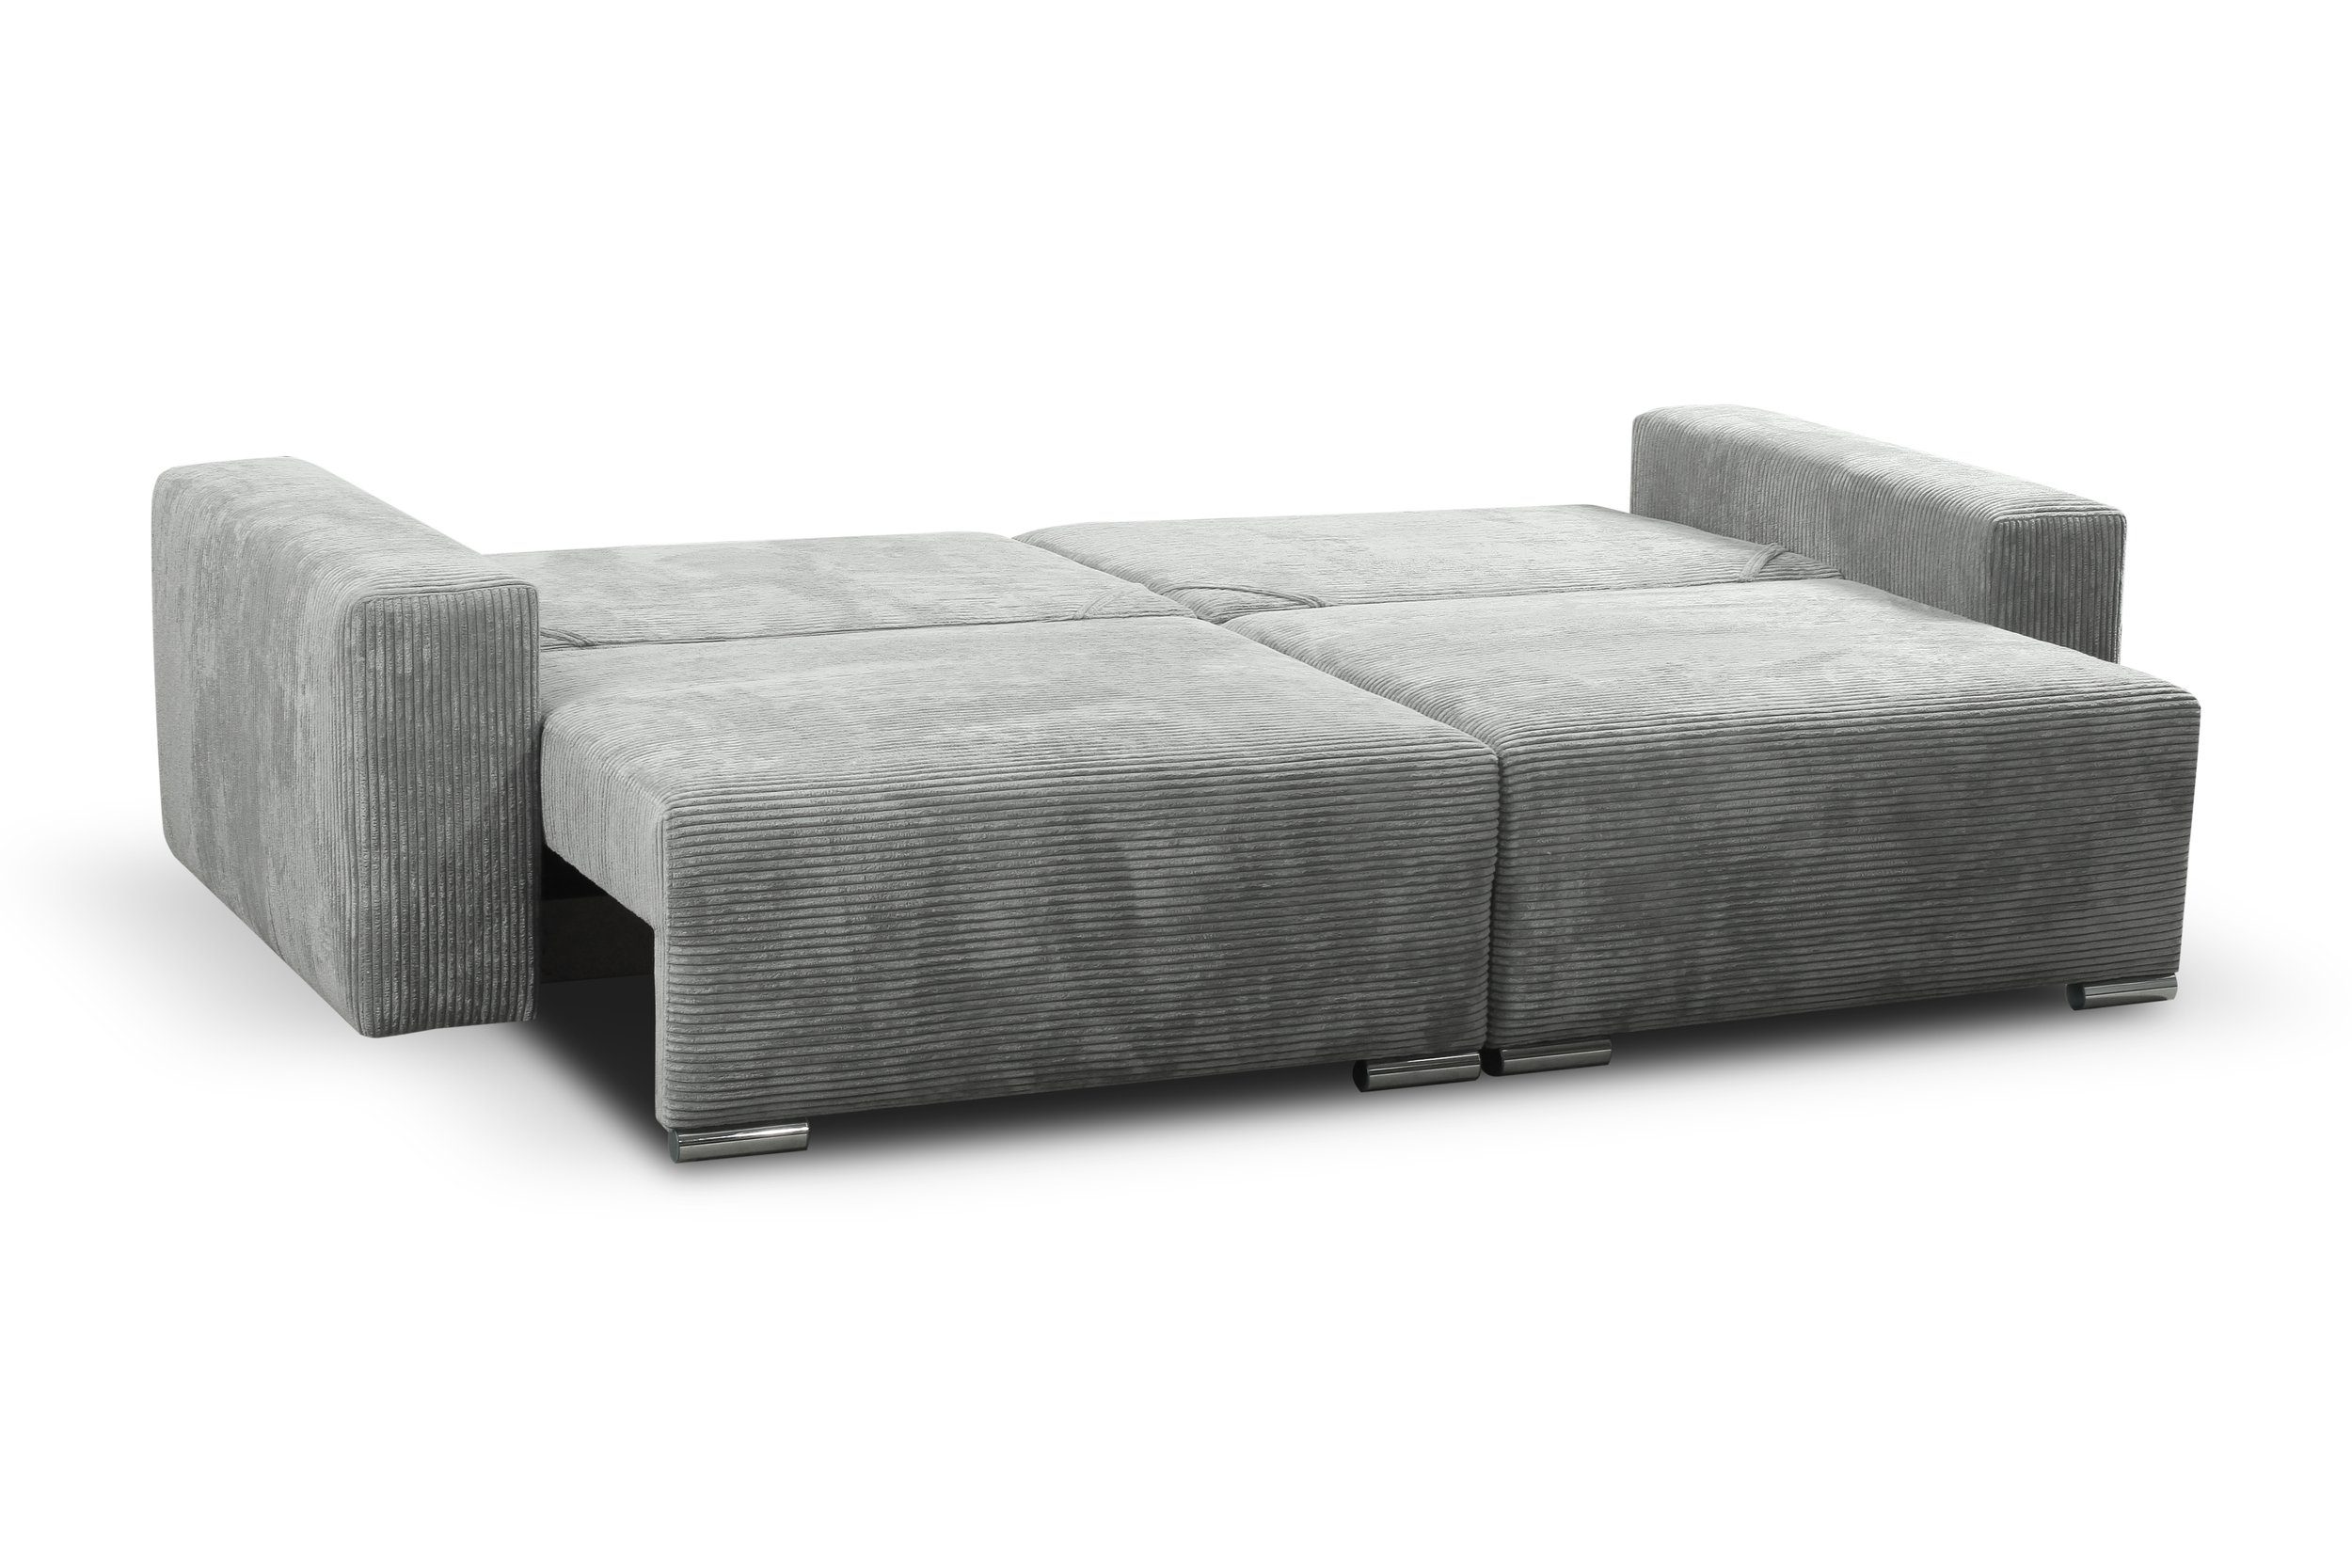 2-Sitzer, Design, Kissen, im Raum 3-Sitzer Modern Stylefy stellbar, frei Modern Sofa, mit inklusive Bettfunktion, Afina,